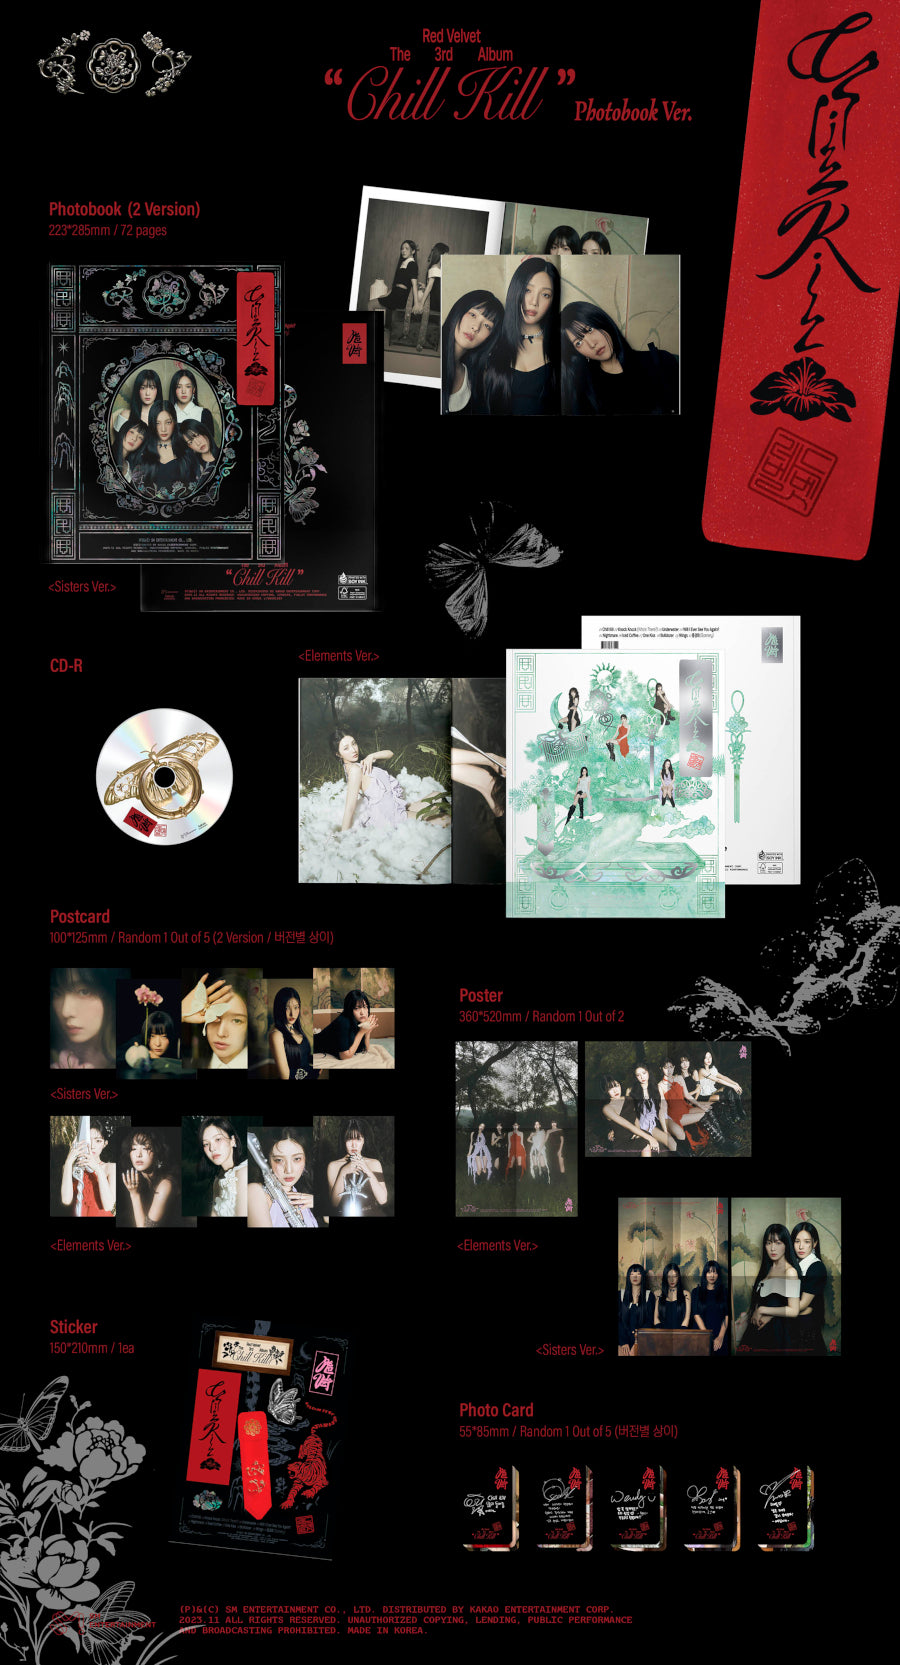 Red Velvet Vol.3 - Chill Kill (Photobook Version)